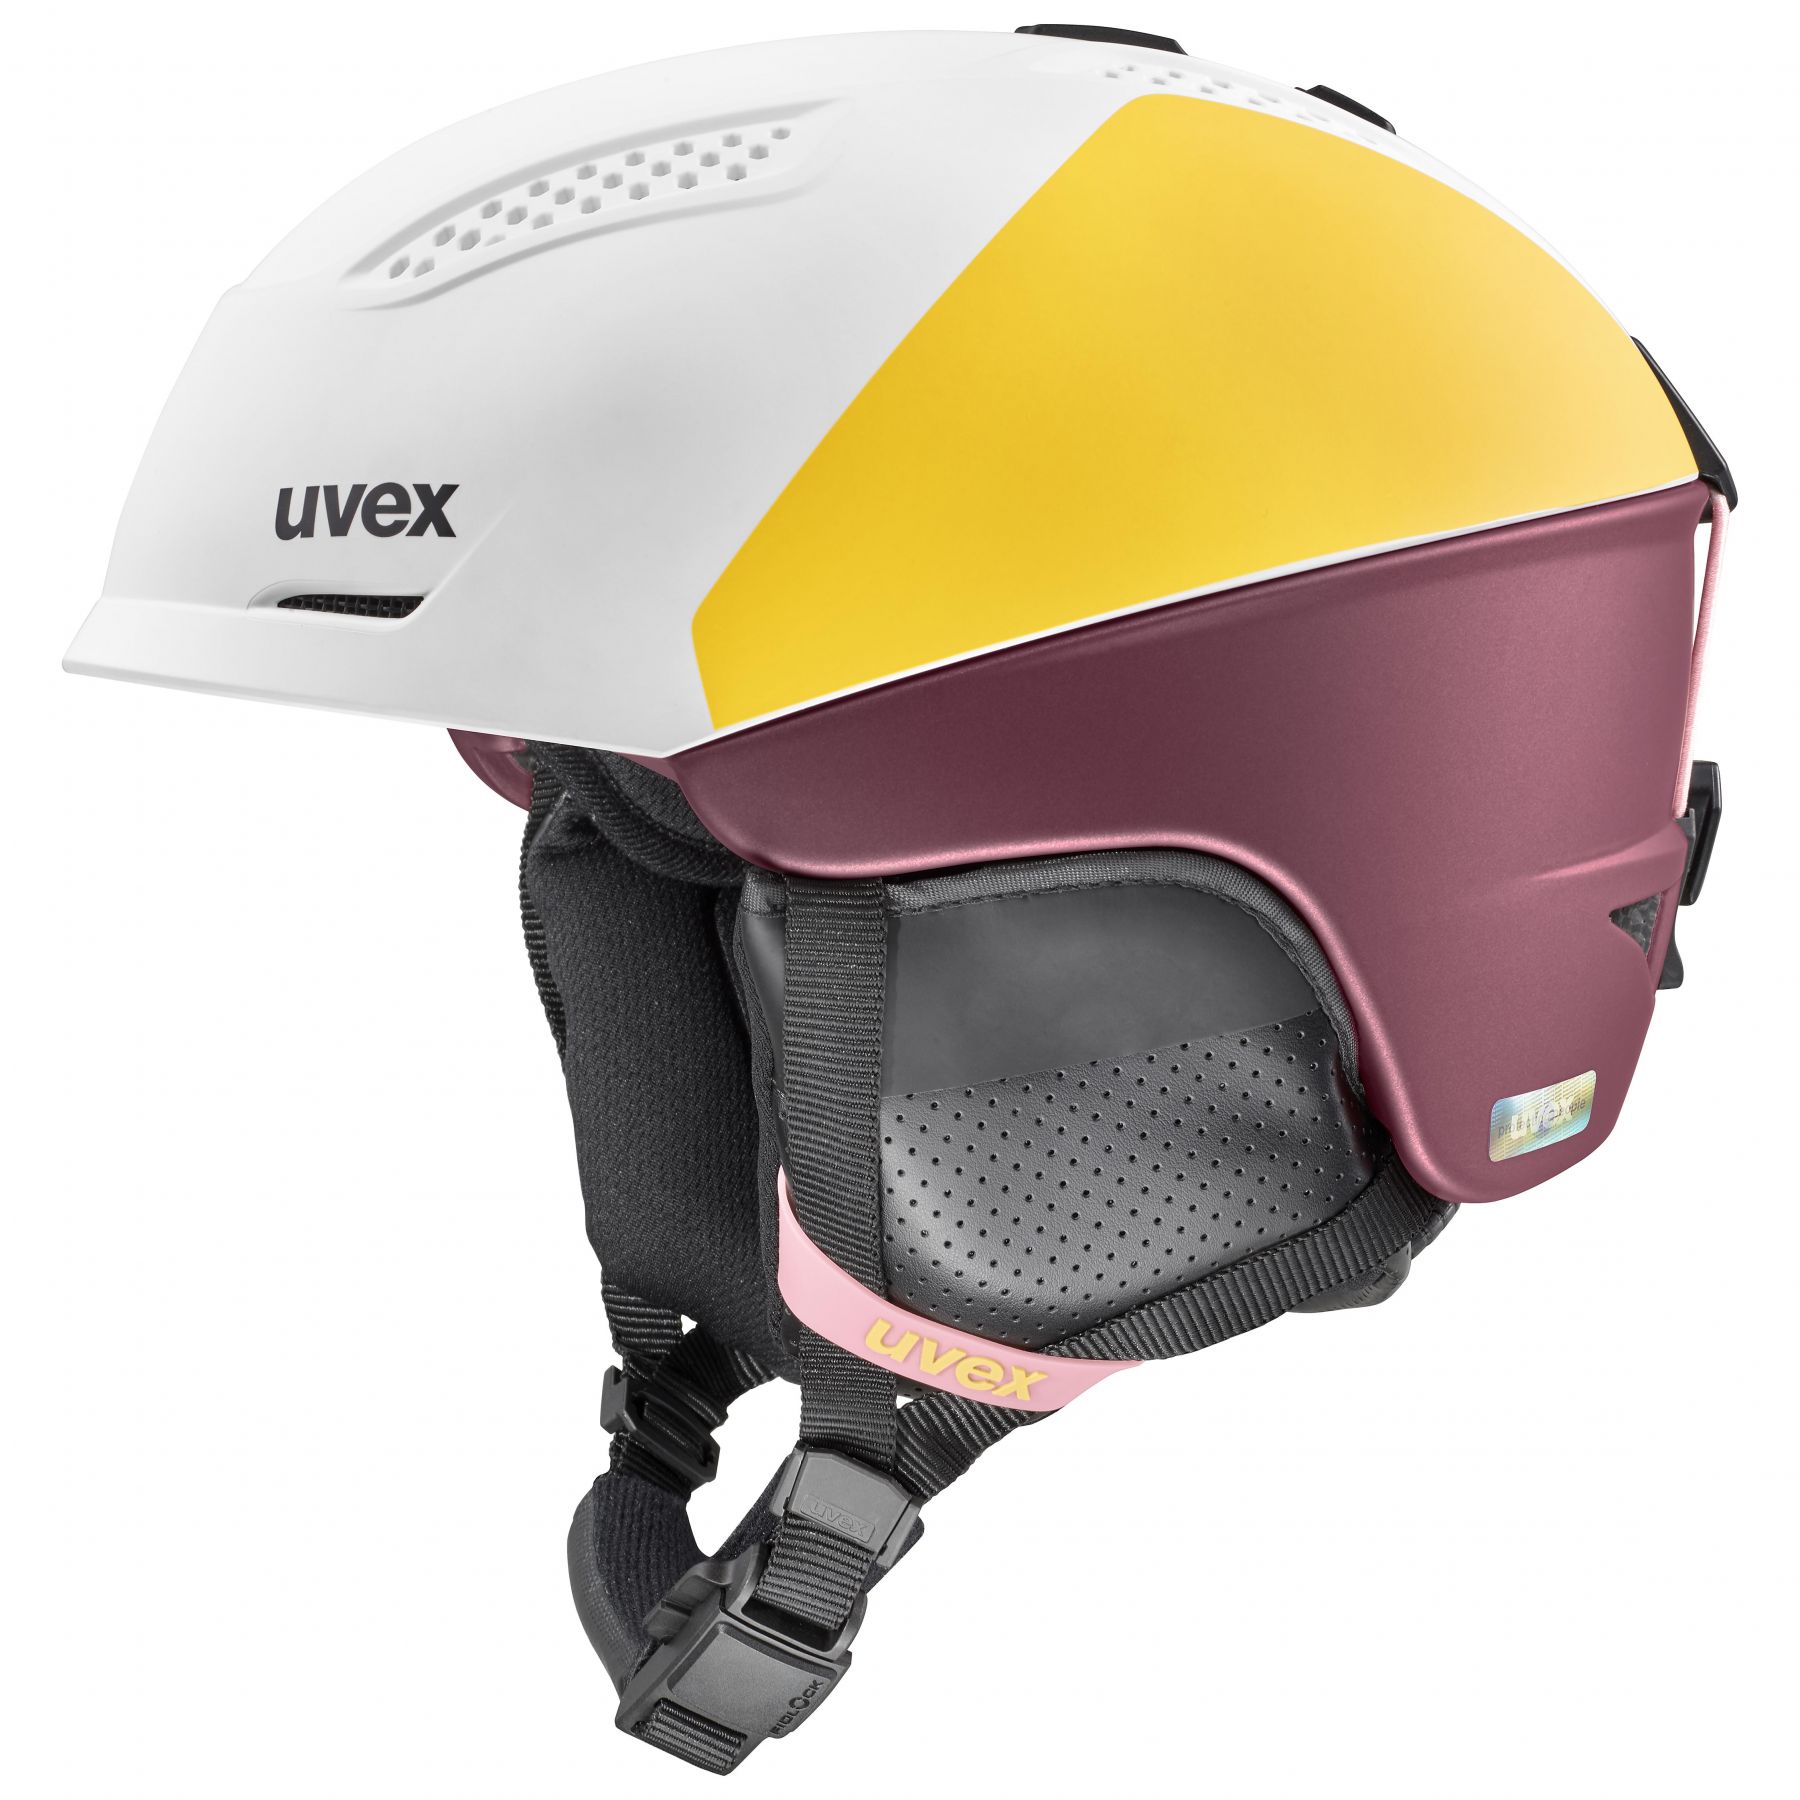 Billede af Uvex Ultra Pro, skihjelm, dame, hvid/gul/mørkerød